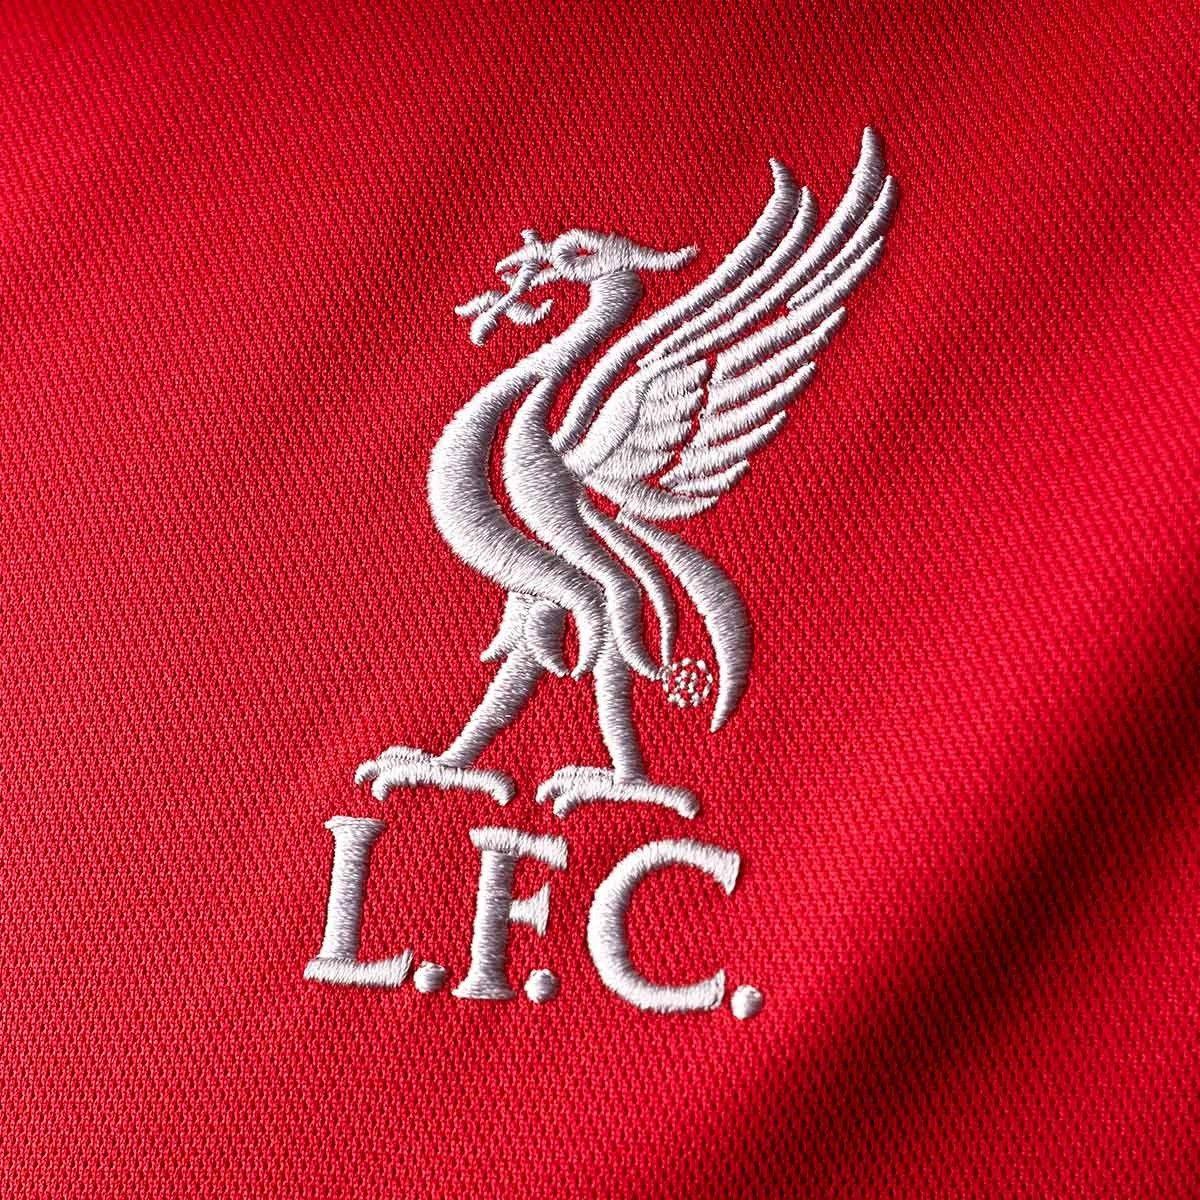 Liverpool Logo - LogoDix